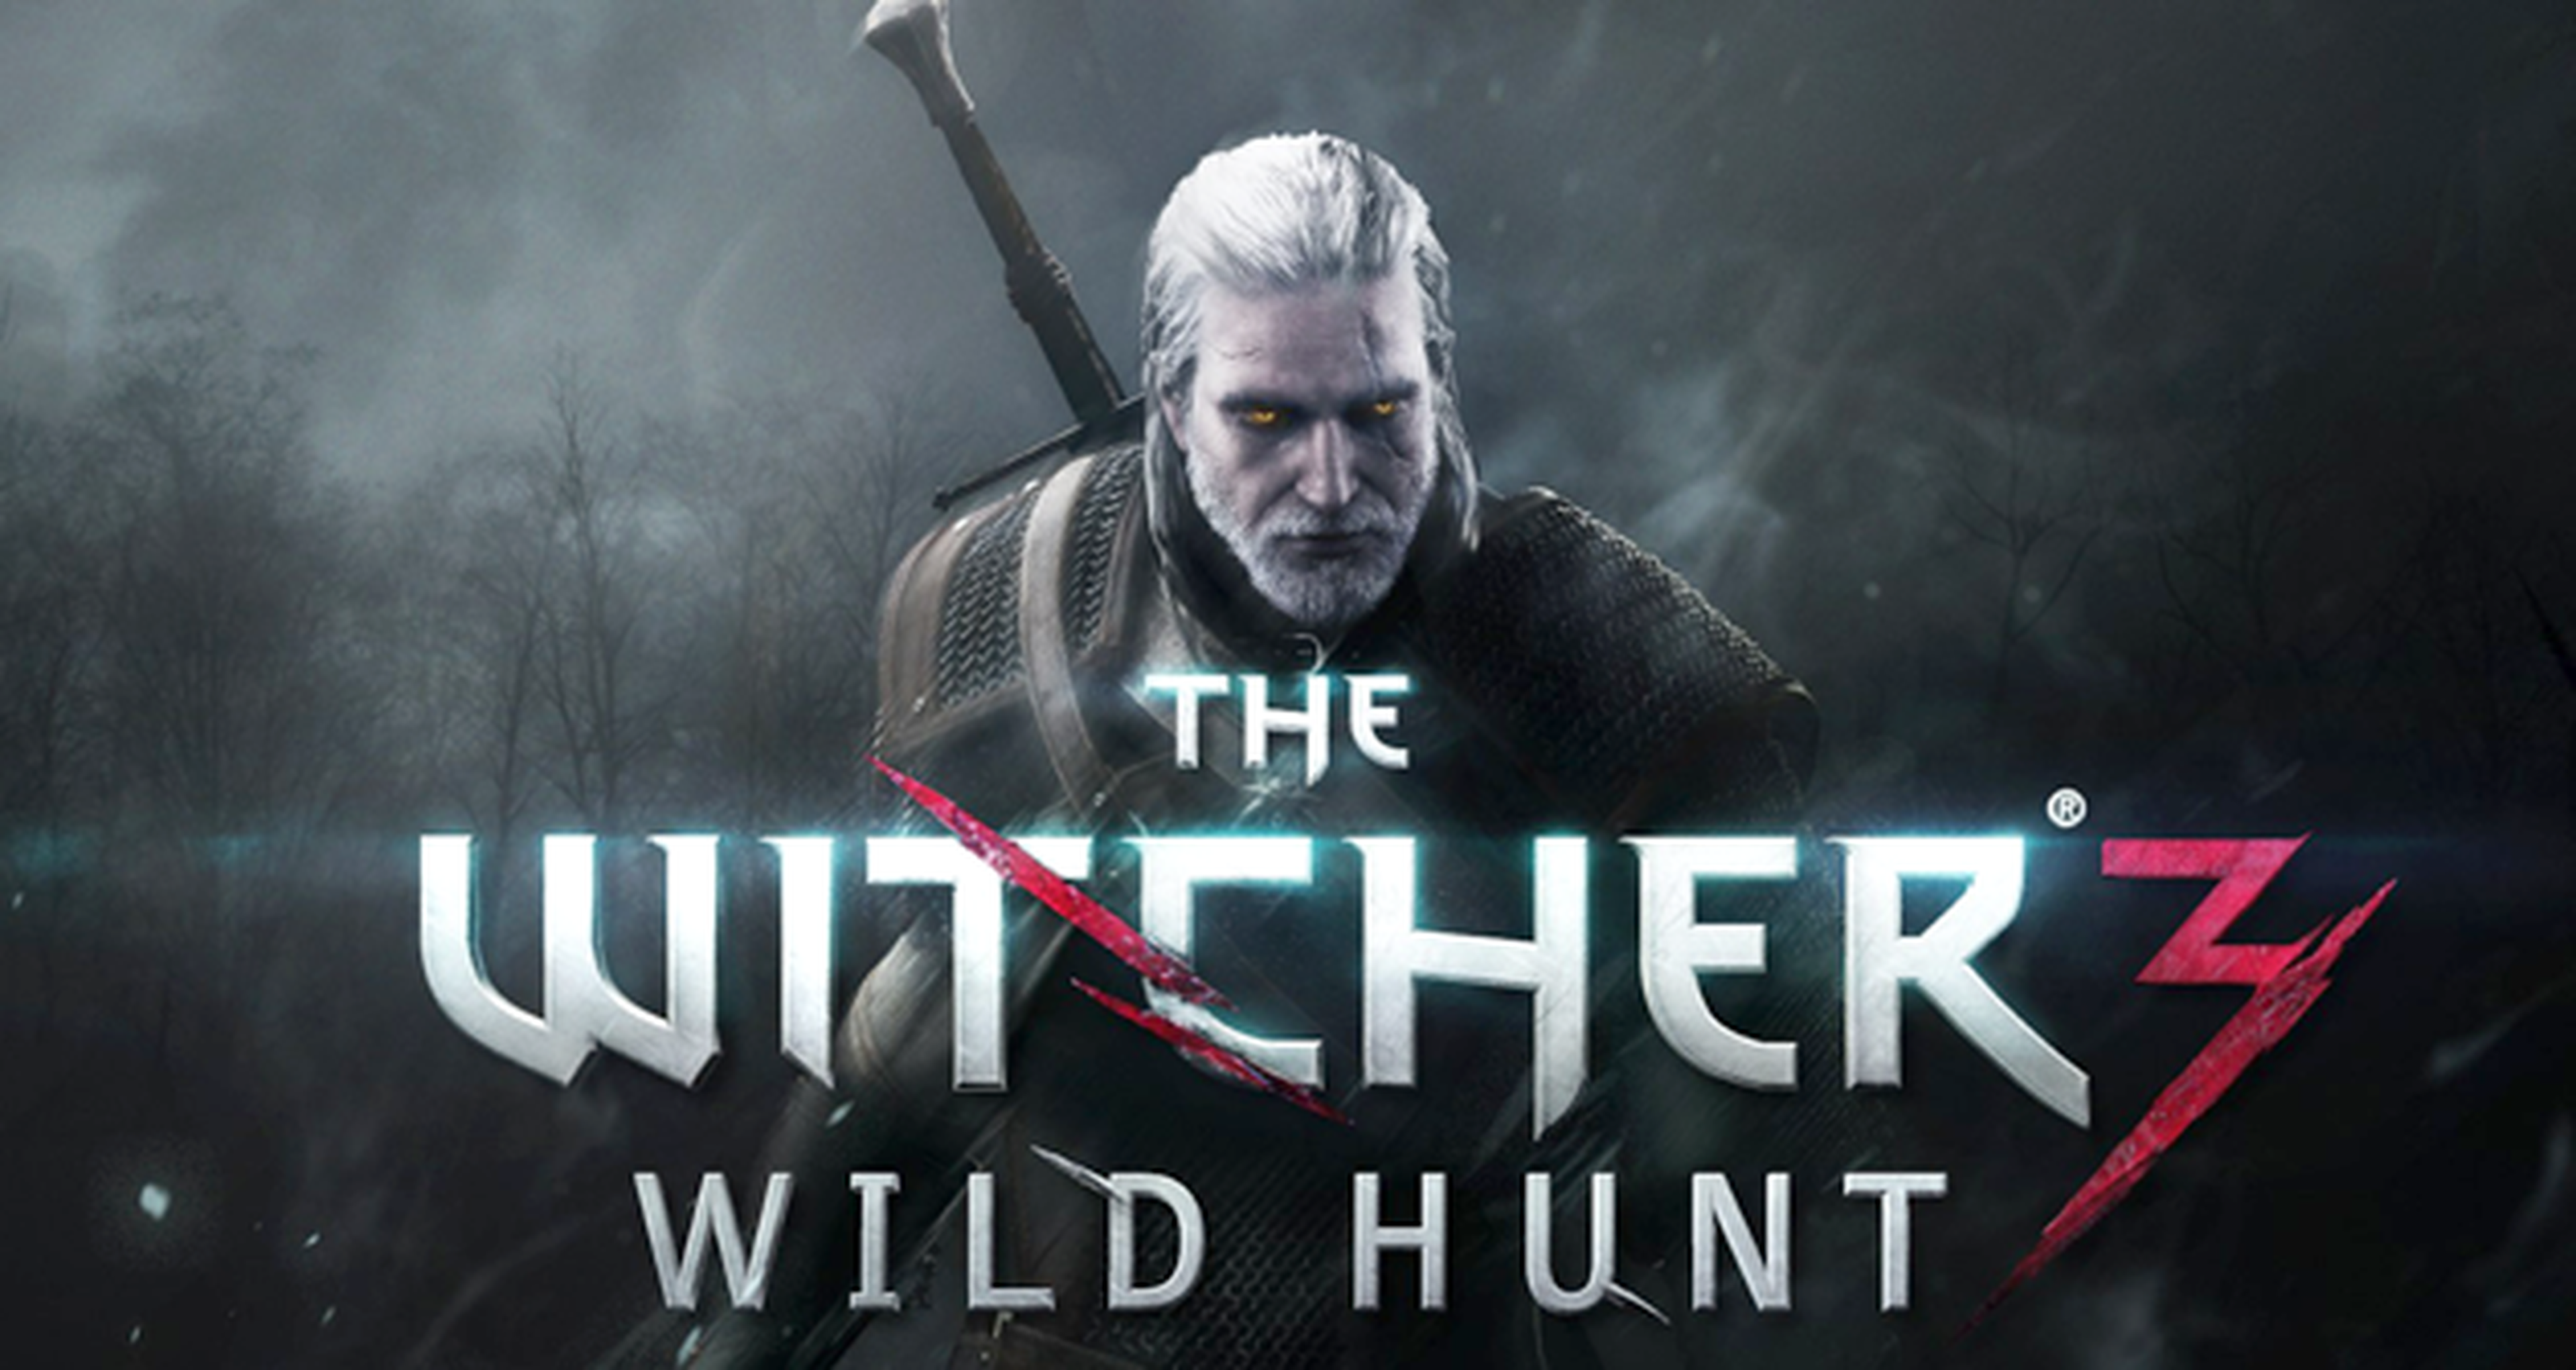 Avance de The Witcher 3 Wild Hunt. ¡Queda poco más de un mes!